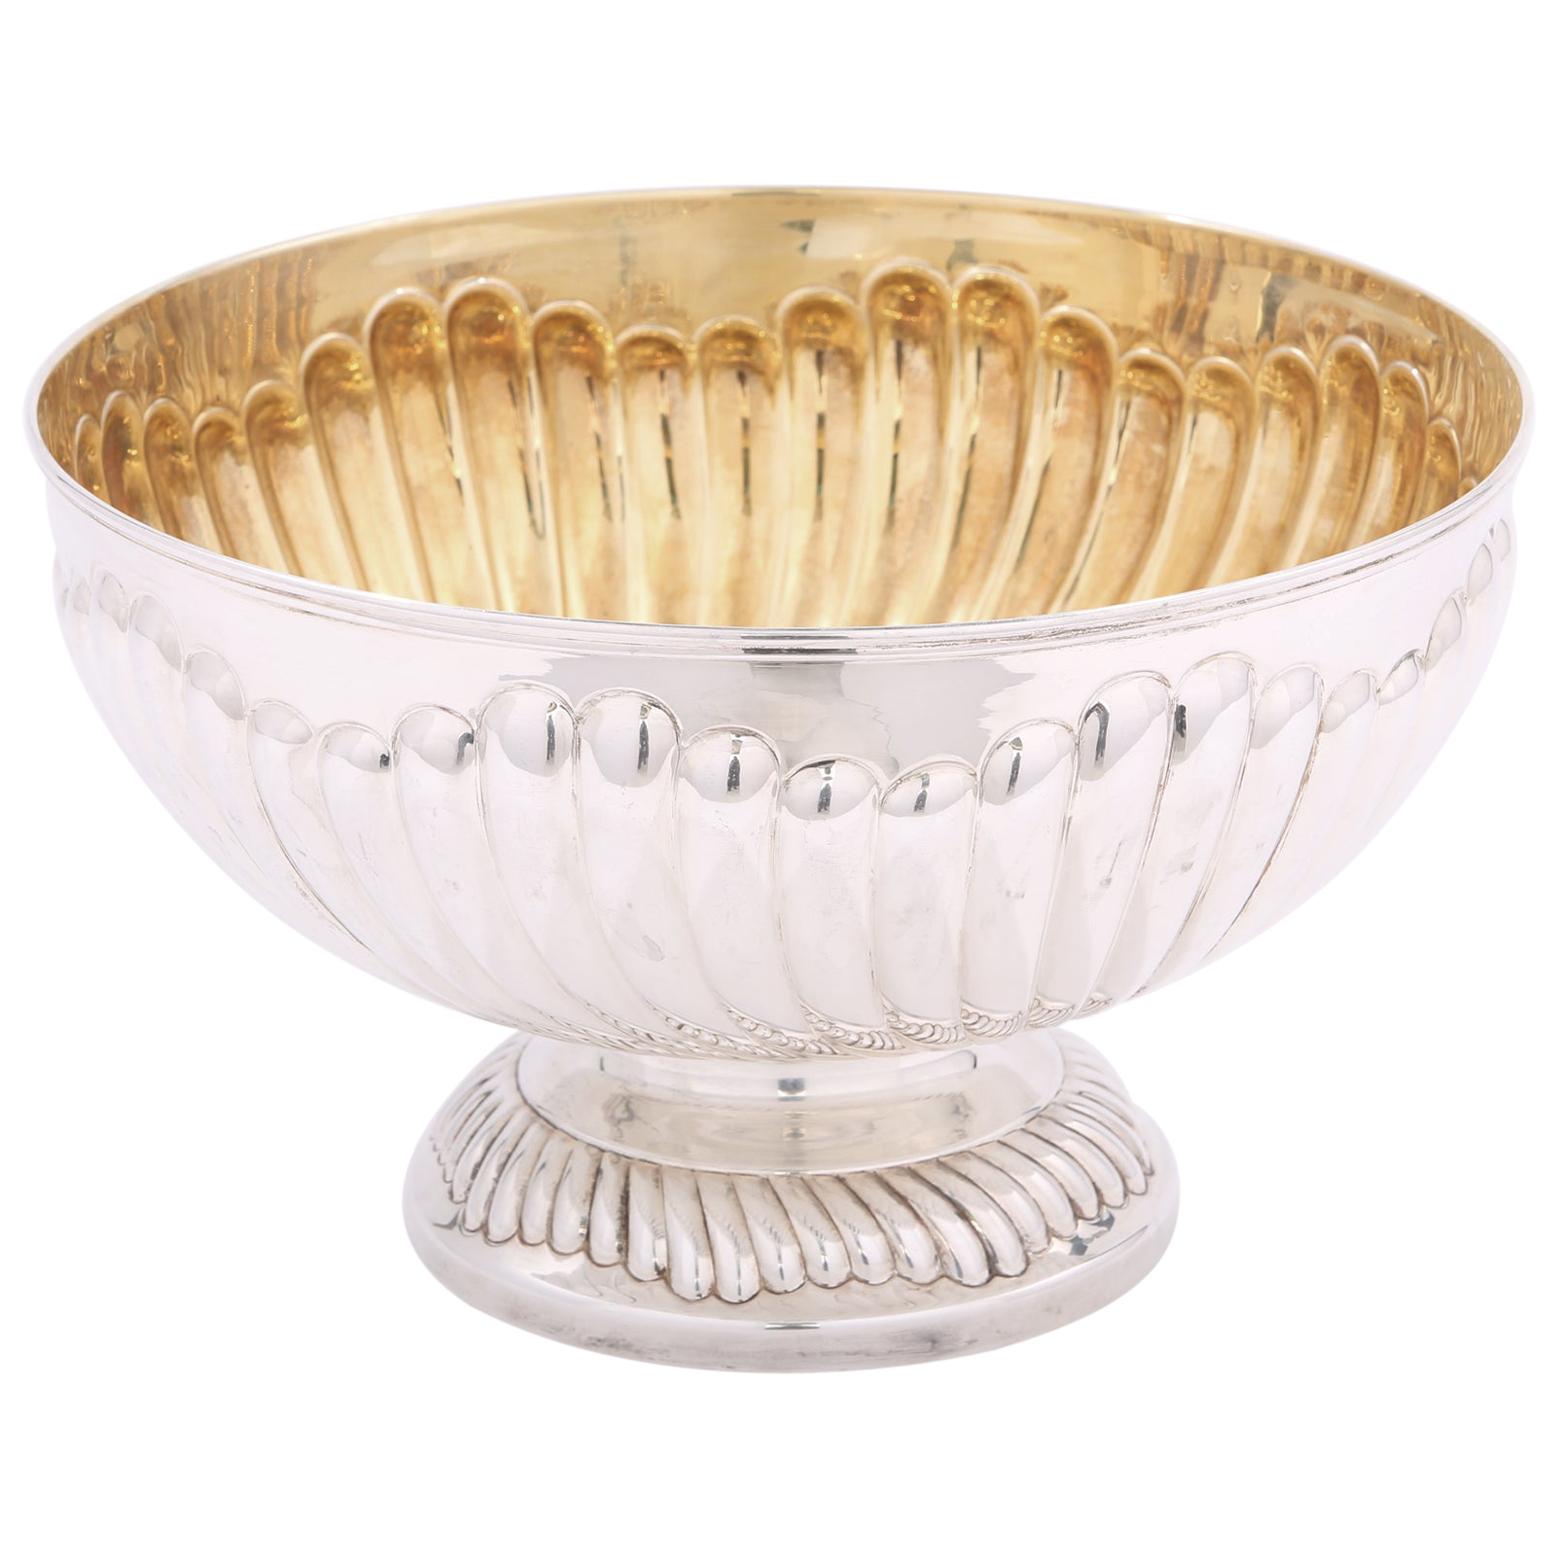 Grand bol de centre de table en argent sterling avec intérieur en or